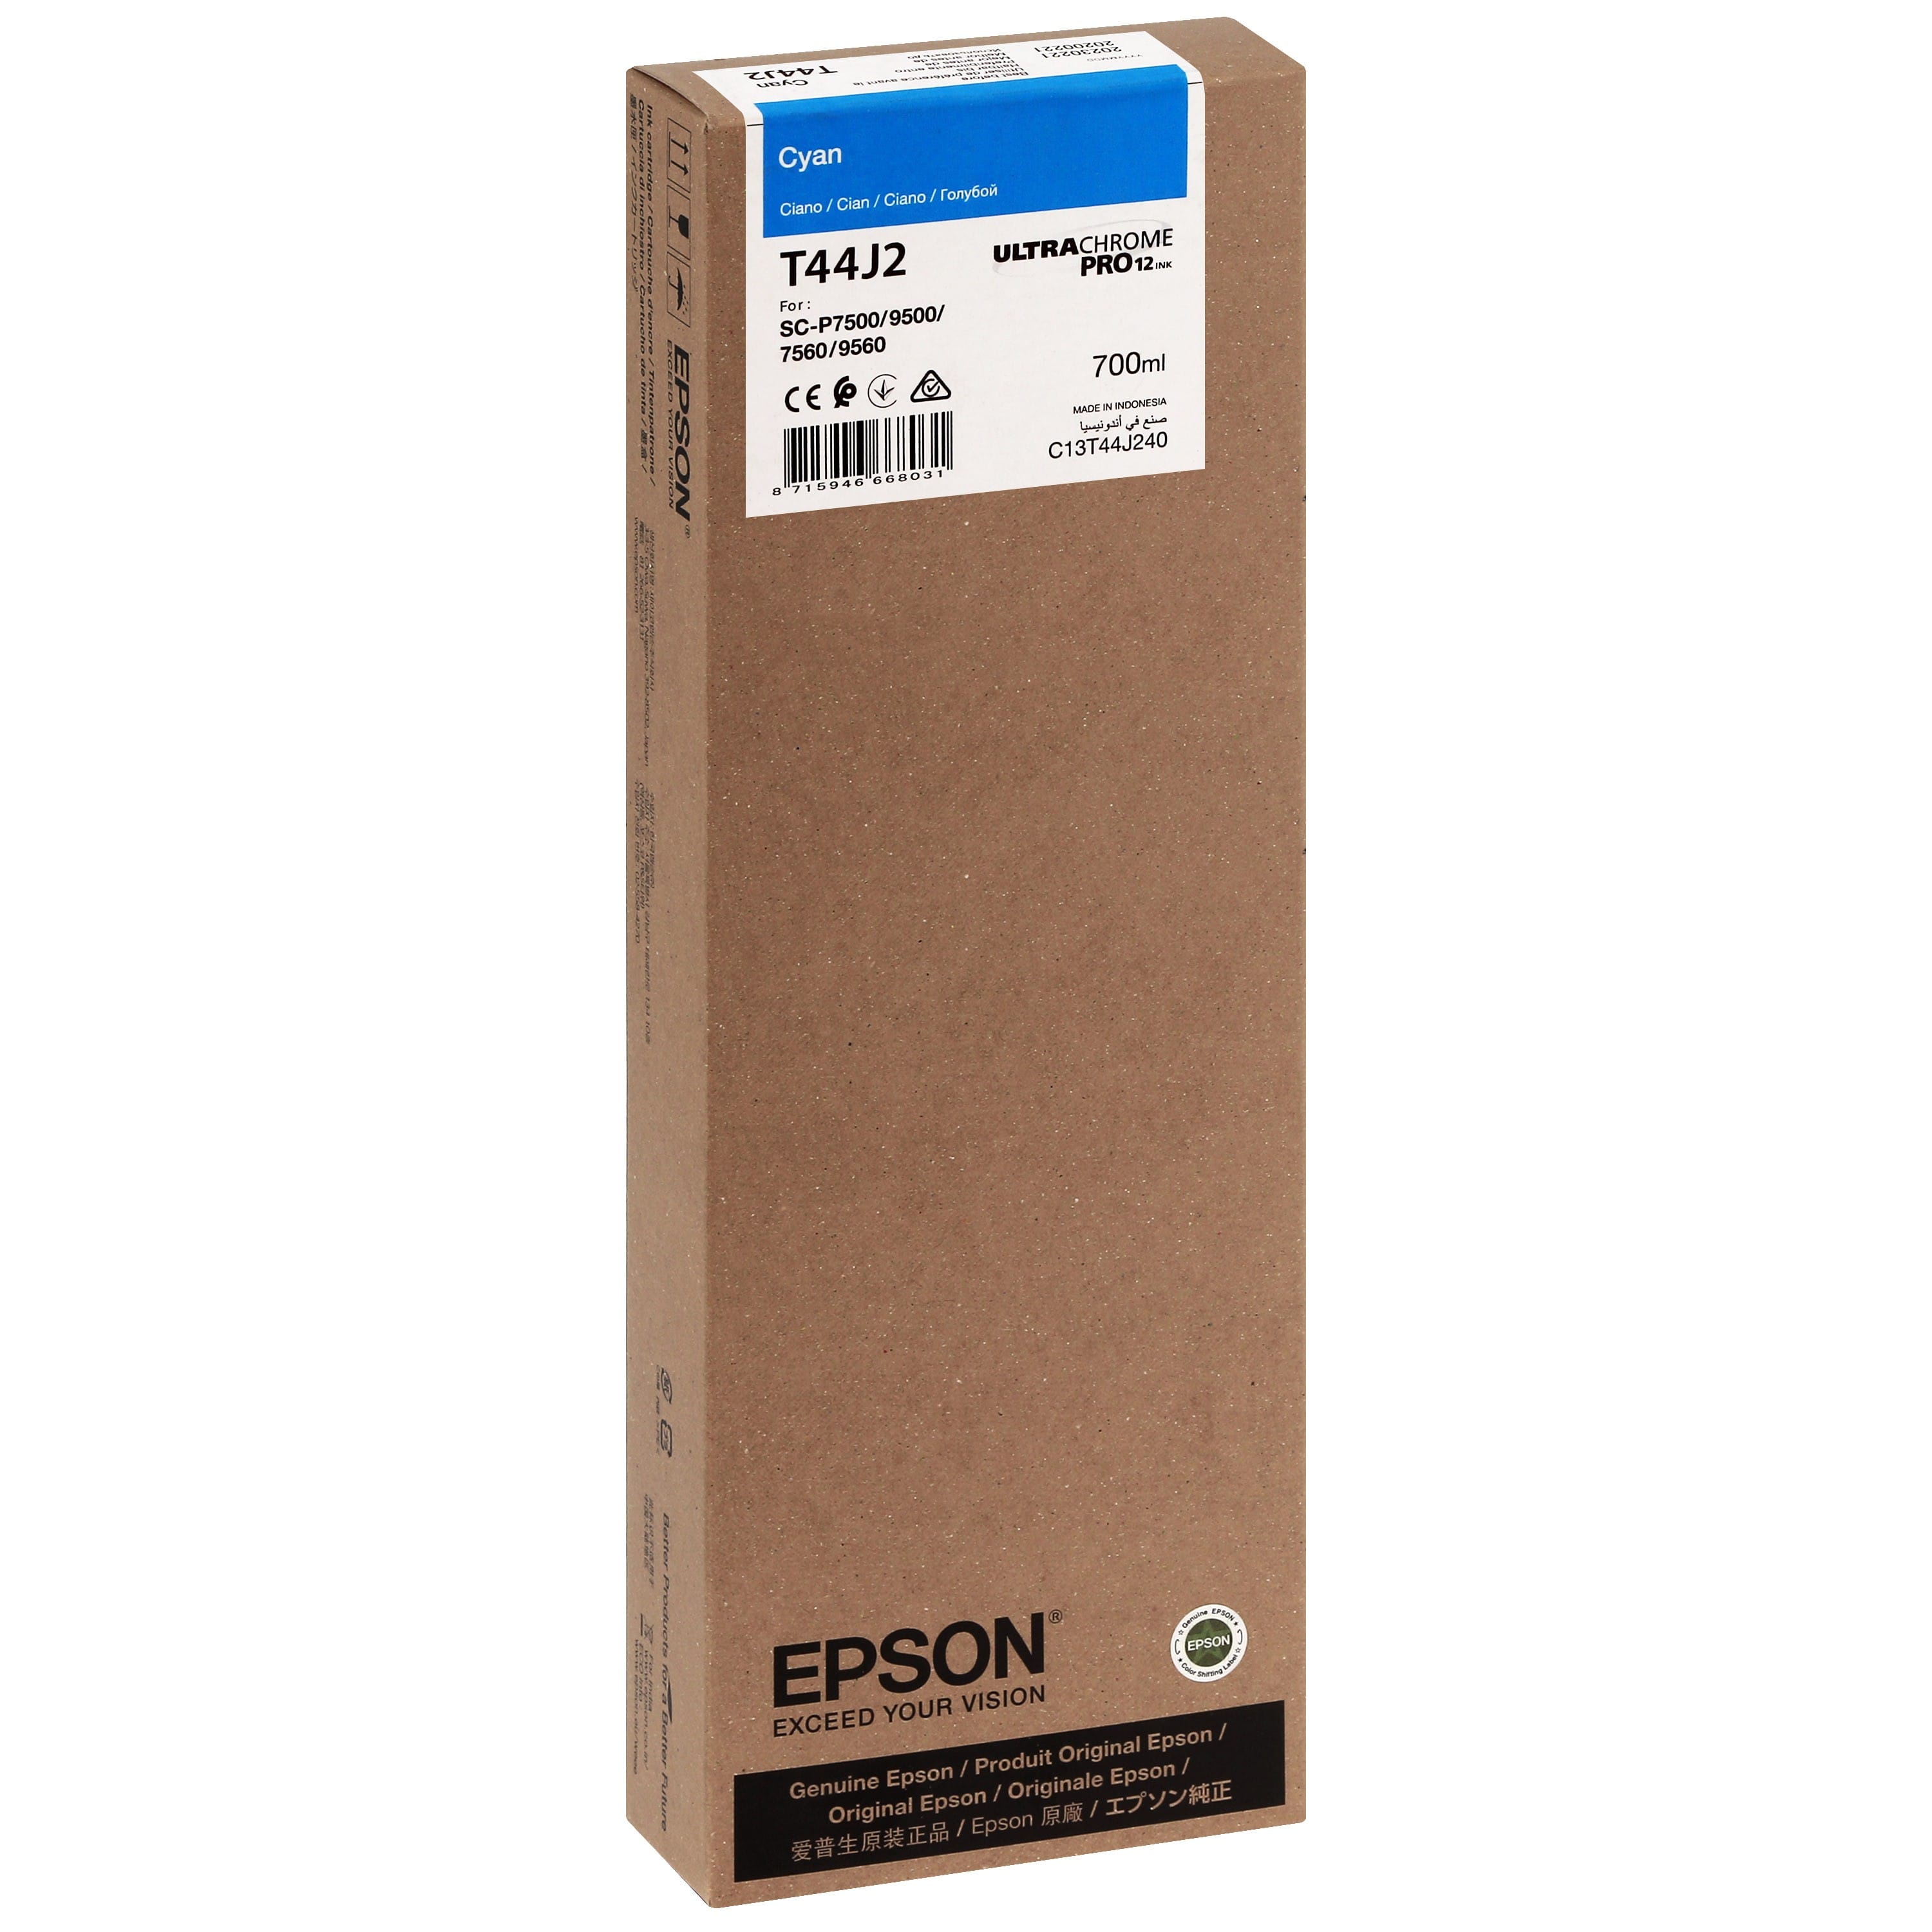 EPSON - Cartouche d'encre traceur T44J2 Pour imprimante SC-P7500/9500 UltraChrome PRO Cyan - 700ml